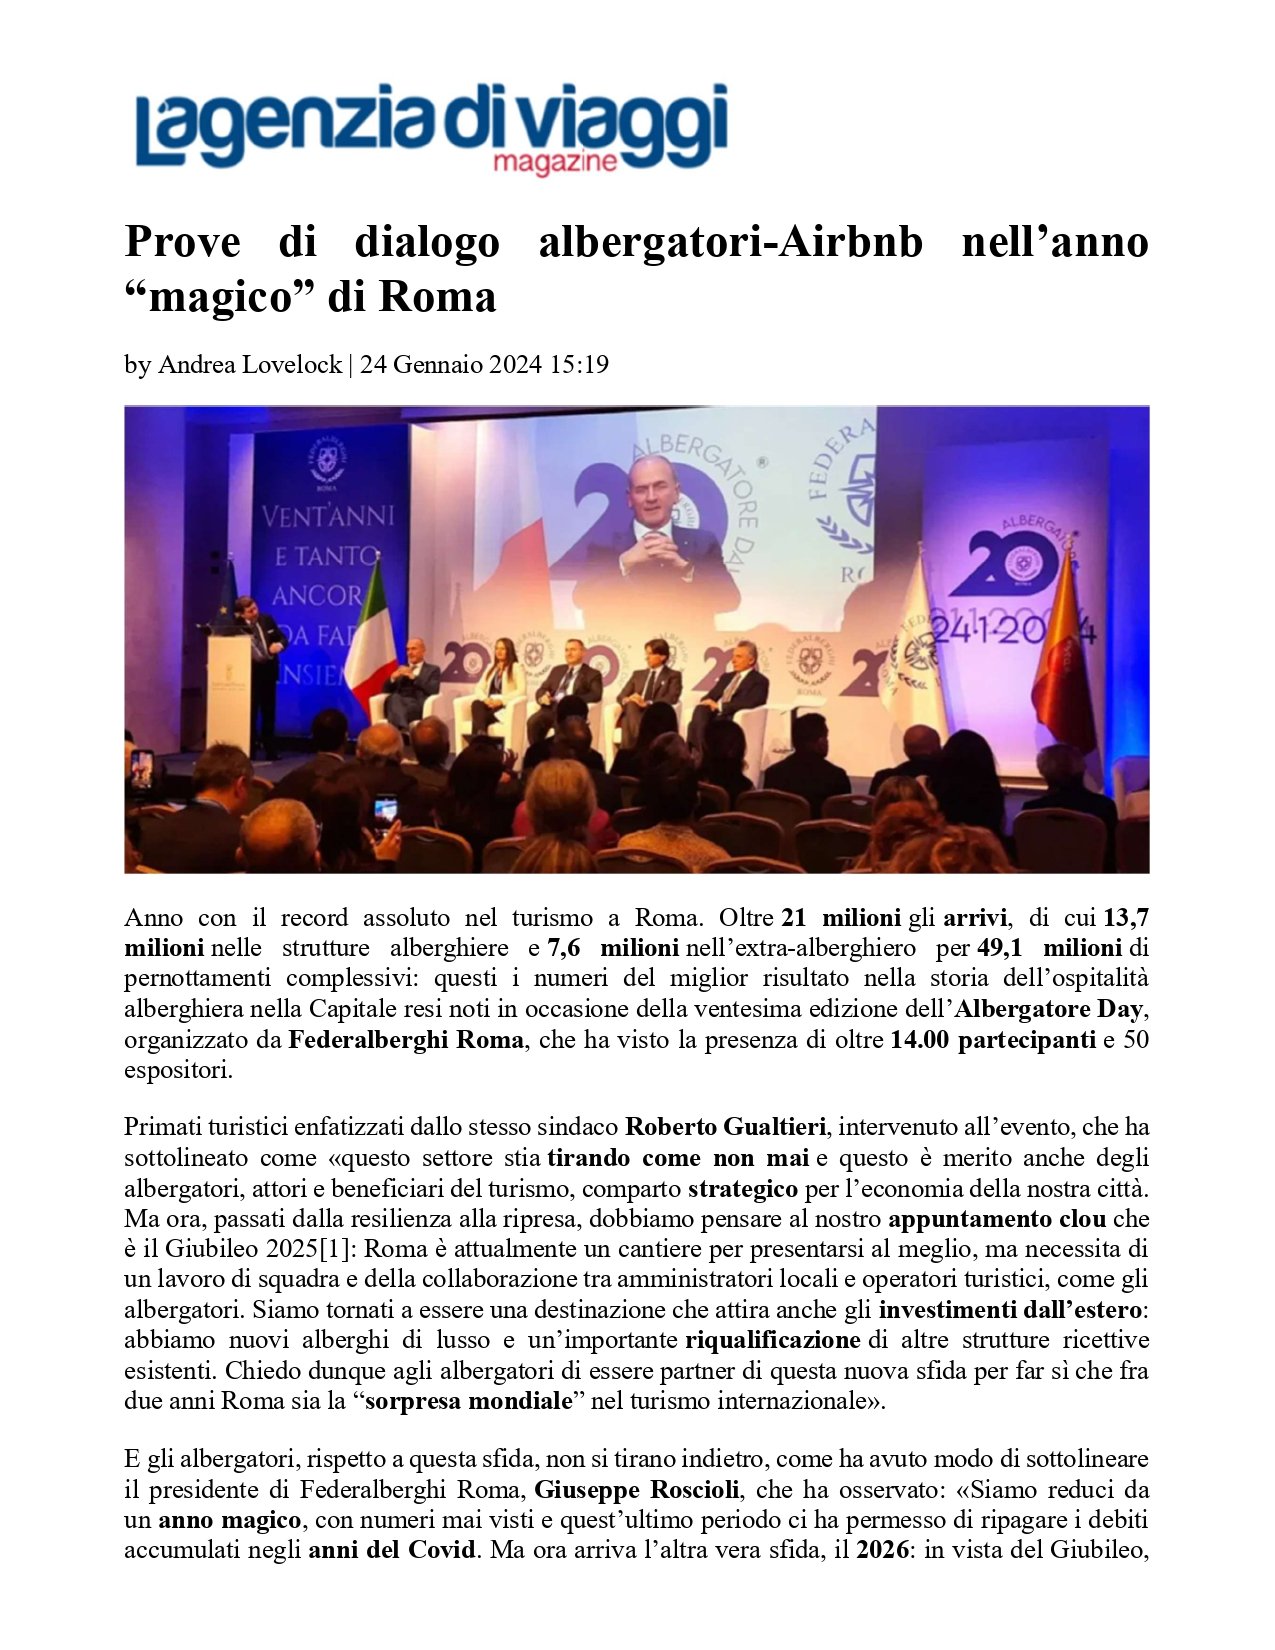 L'Agenzia di Viaggi 24.01.24 Prove di dialogo albergatori-Airbnb nell’anno “magico” di Roma_page-0001.jpg